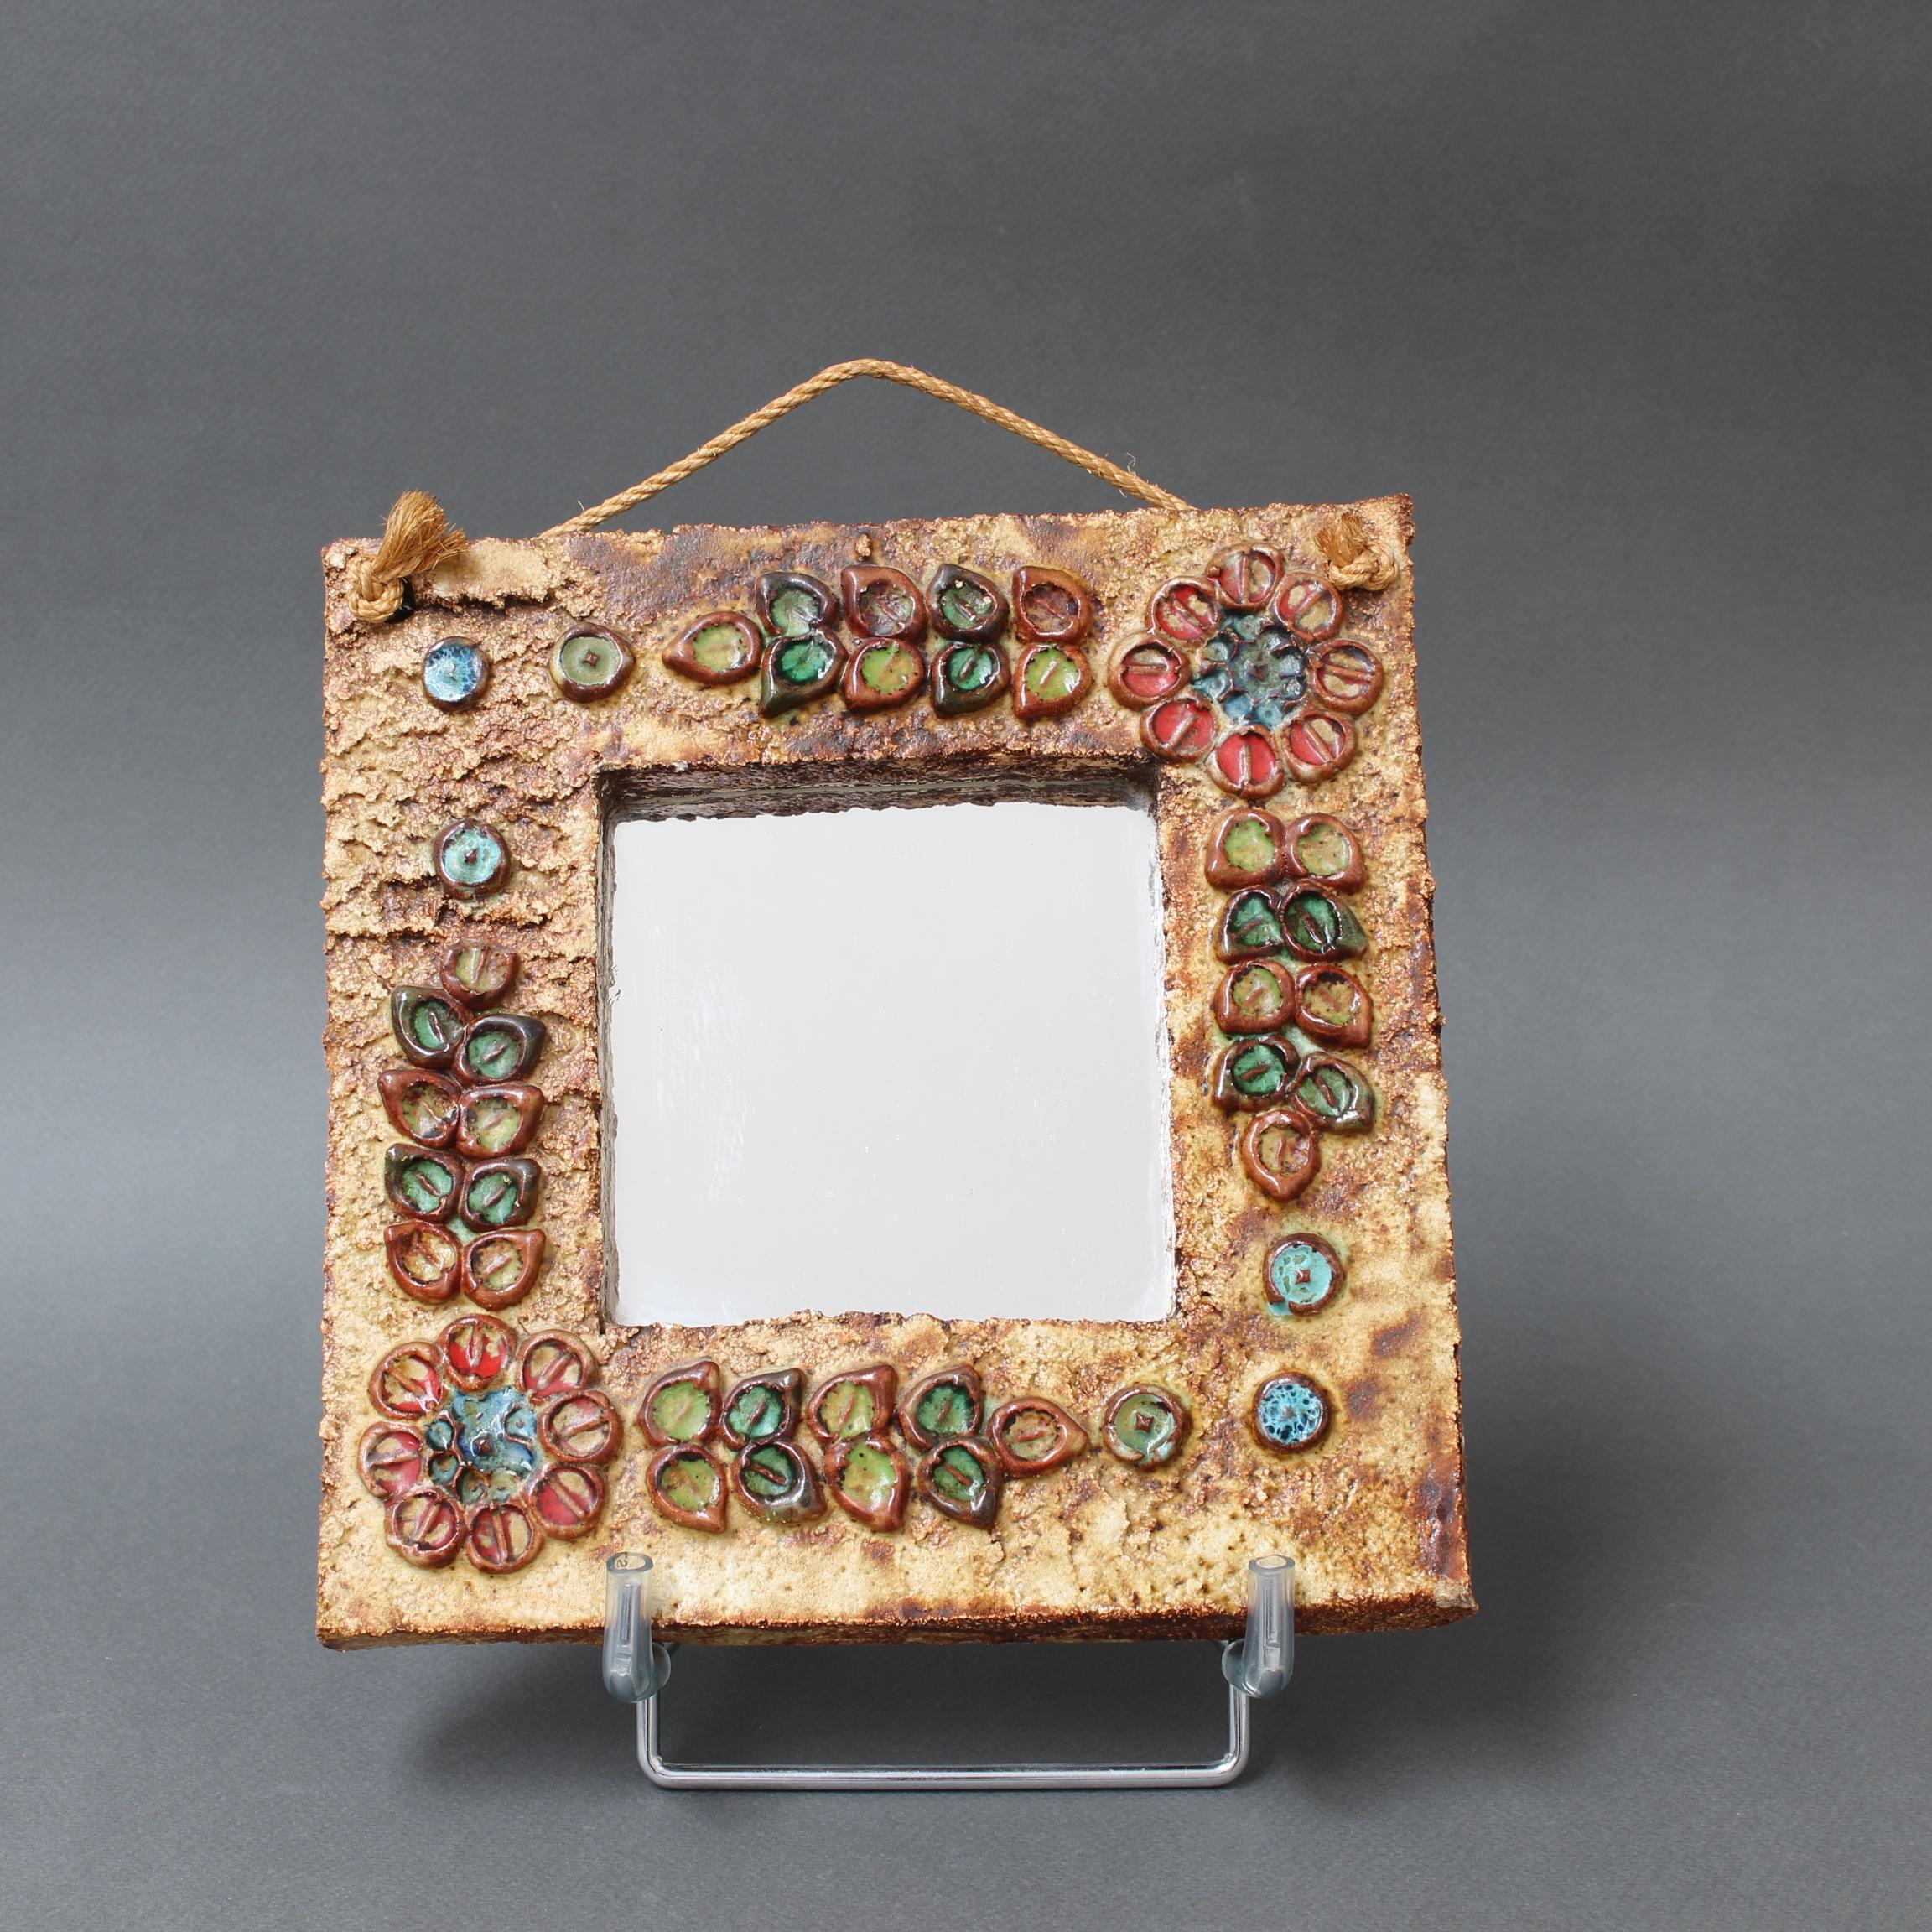 Vintage-Wandspiegel aus Keramik mit Blumenmotiv, zugeschrieben La Roue, Vallauris, Frankreich (ca. 1960er Jahre). Ein charmanter, dekorativer Spiegel mit rustikalen, aber farbenfrohen Details, die das quadratische Spiegelglas umgeben. In sehr gutem